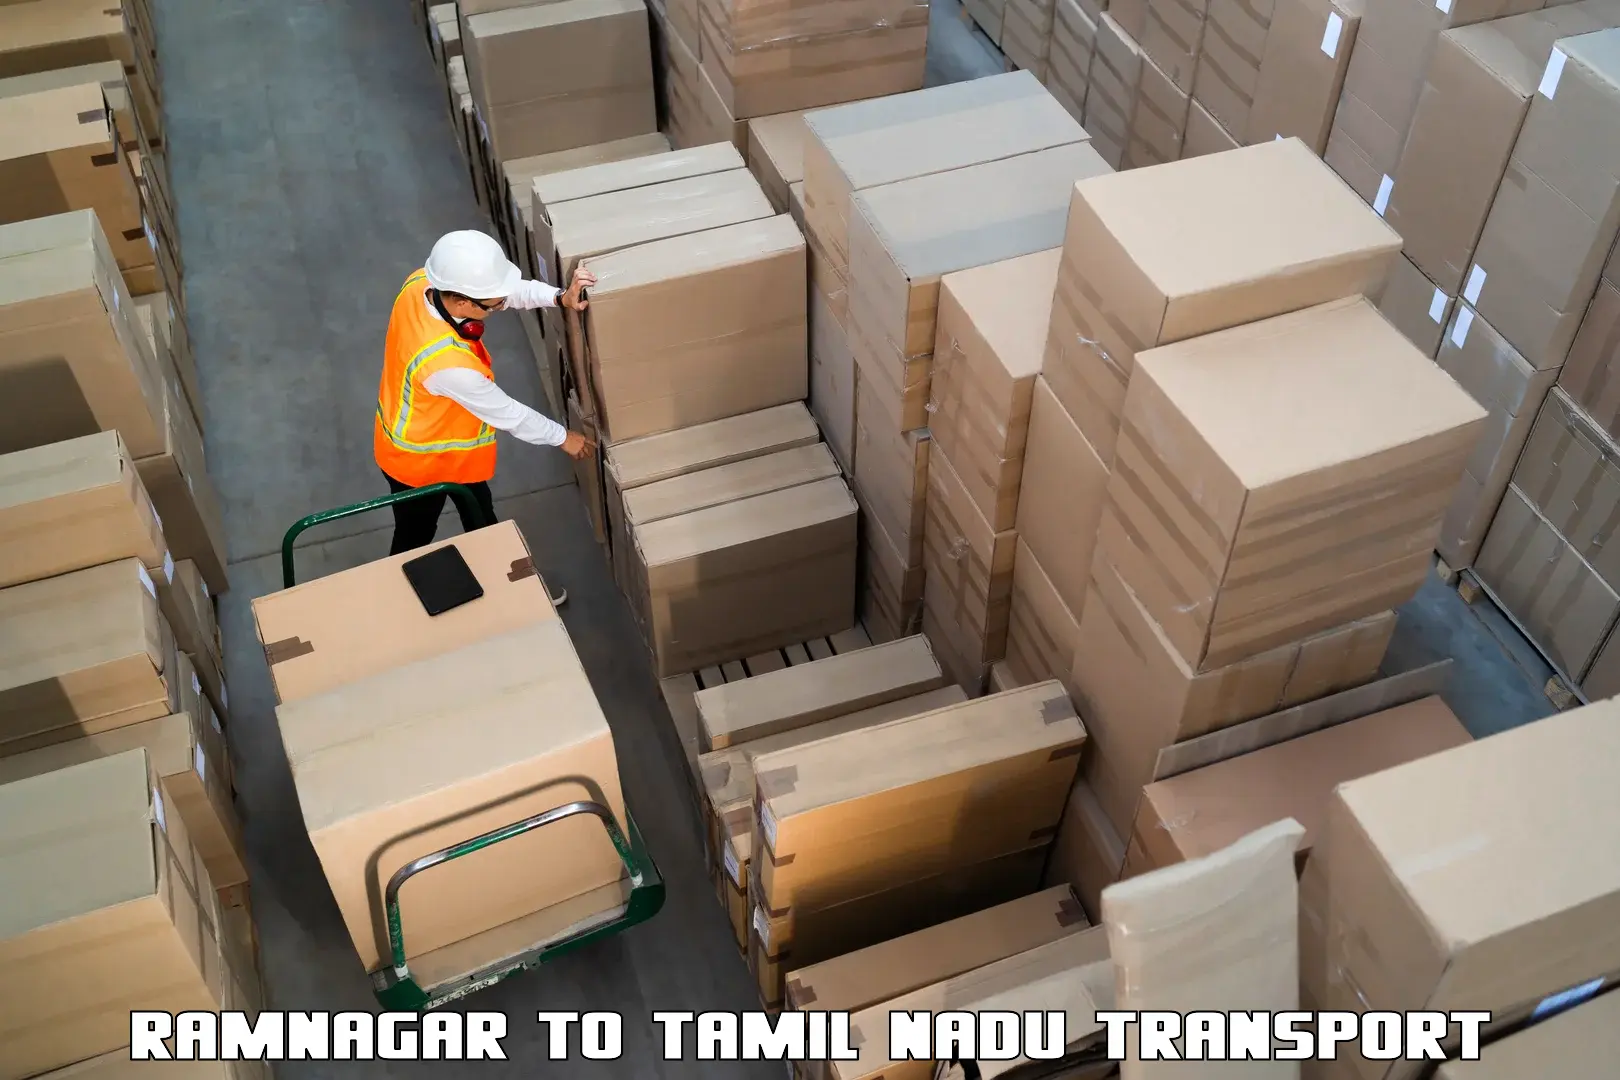 Goods delivery service Ramnagar to Periyakulam